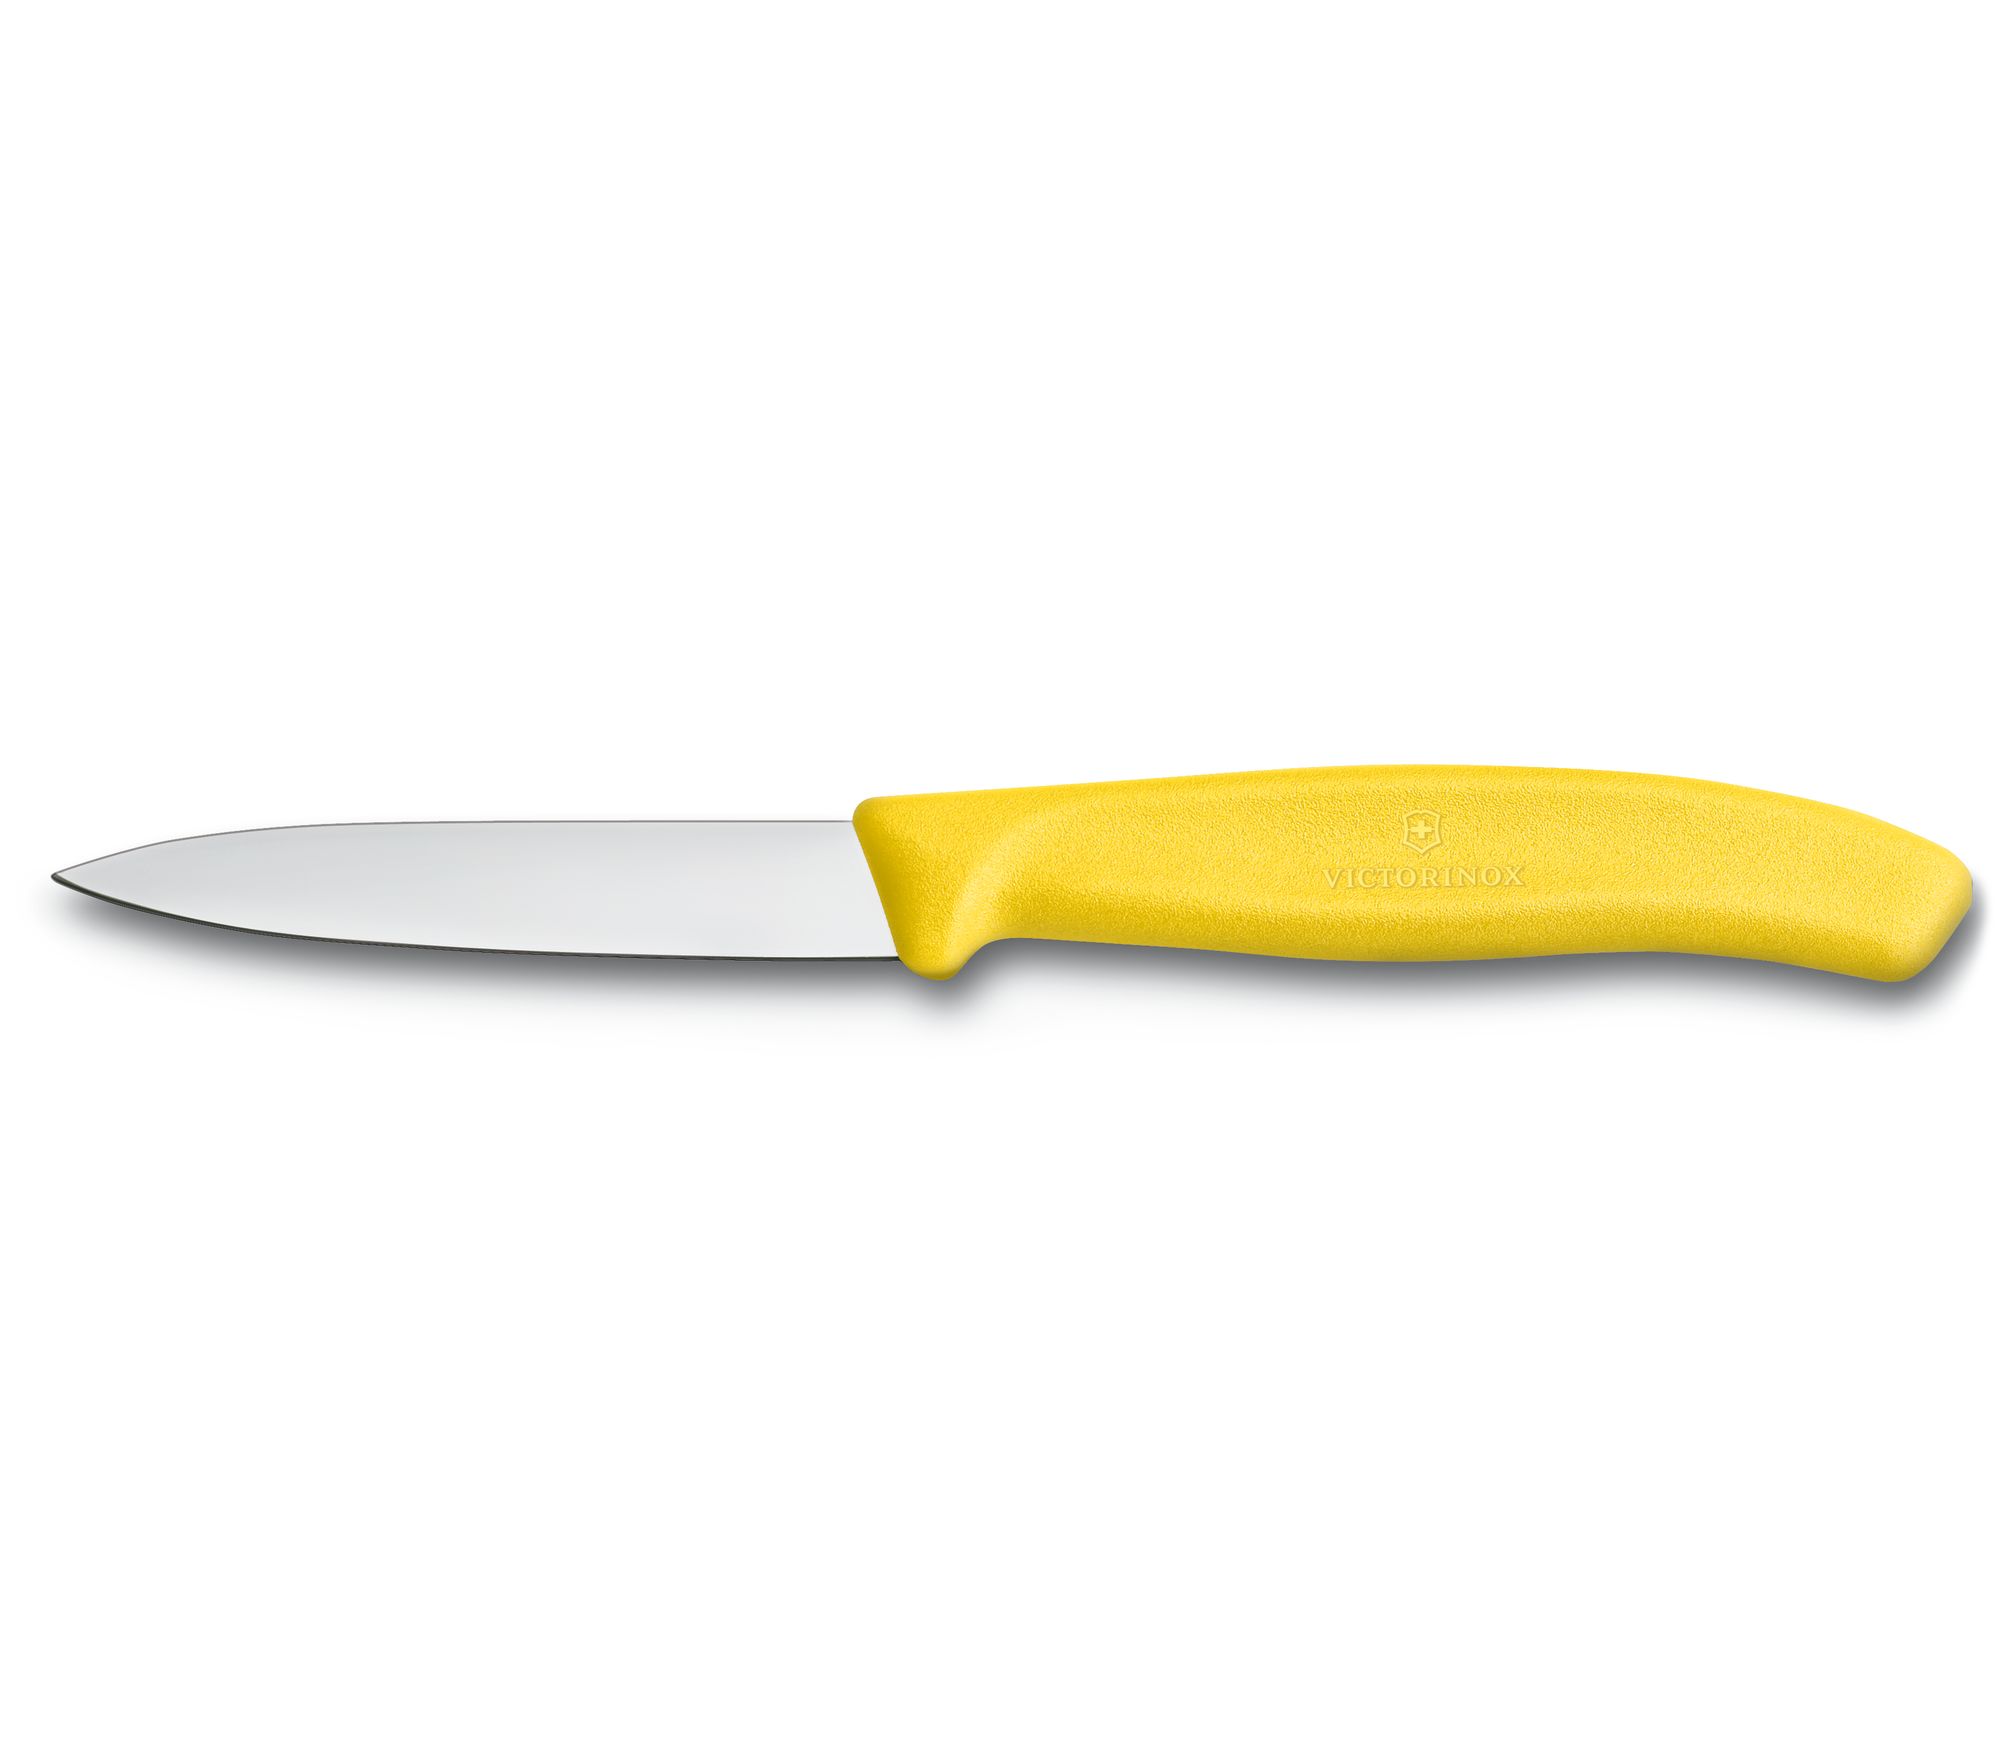 Couteau d'office 8cm jaune 2pcs